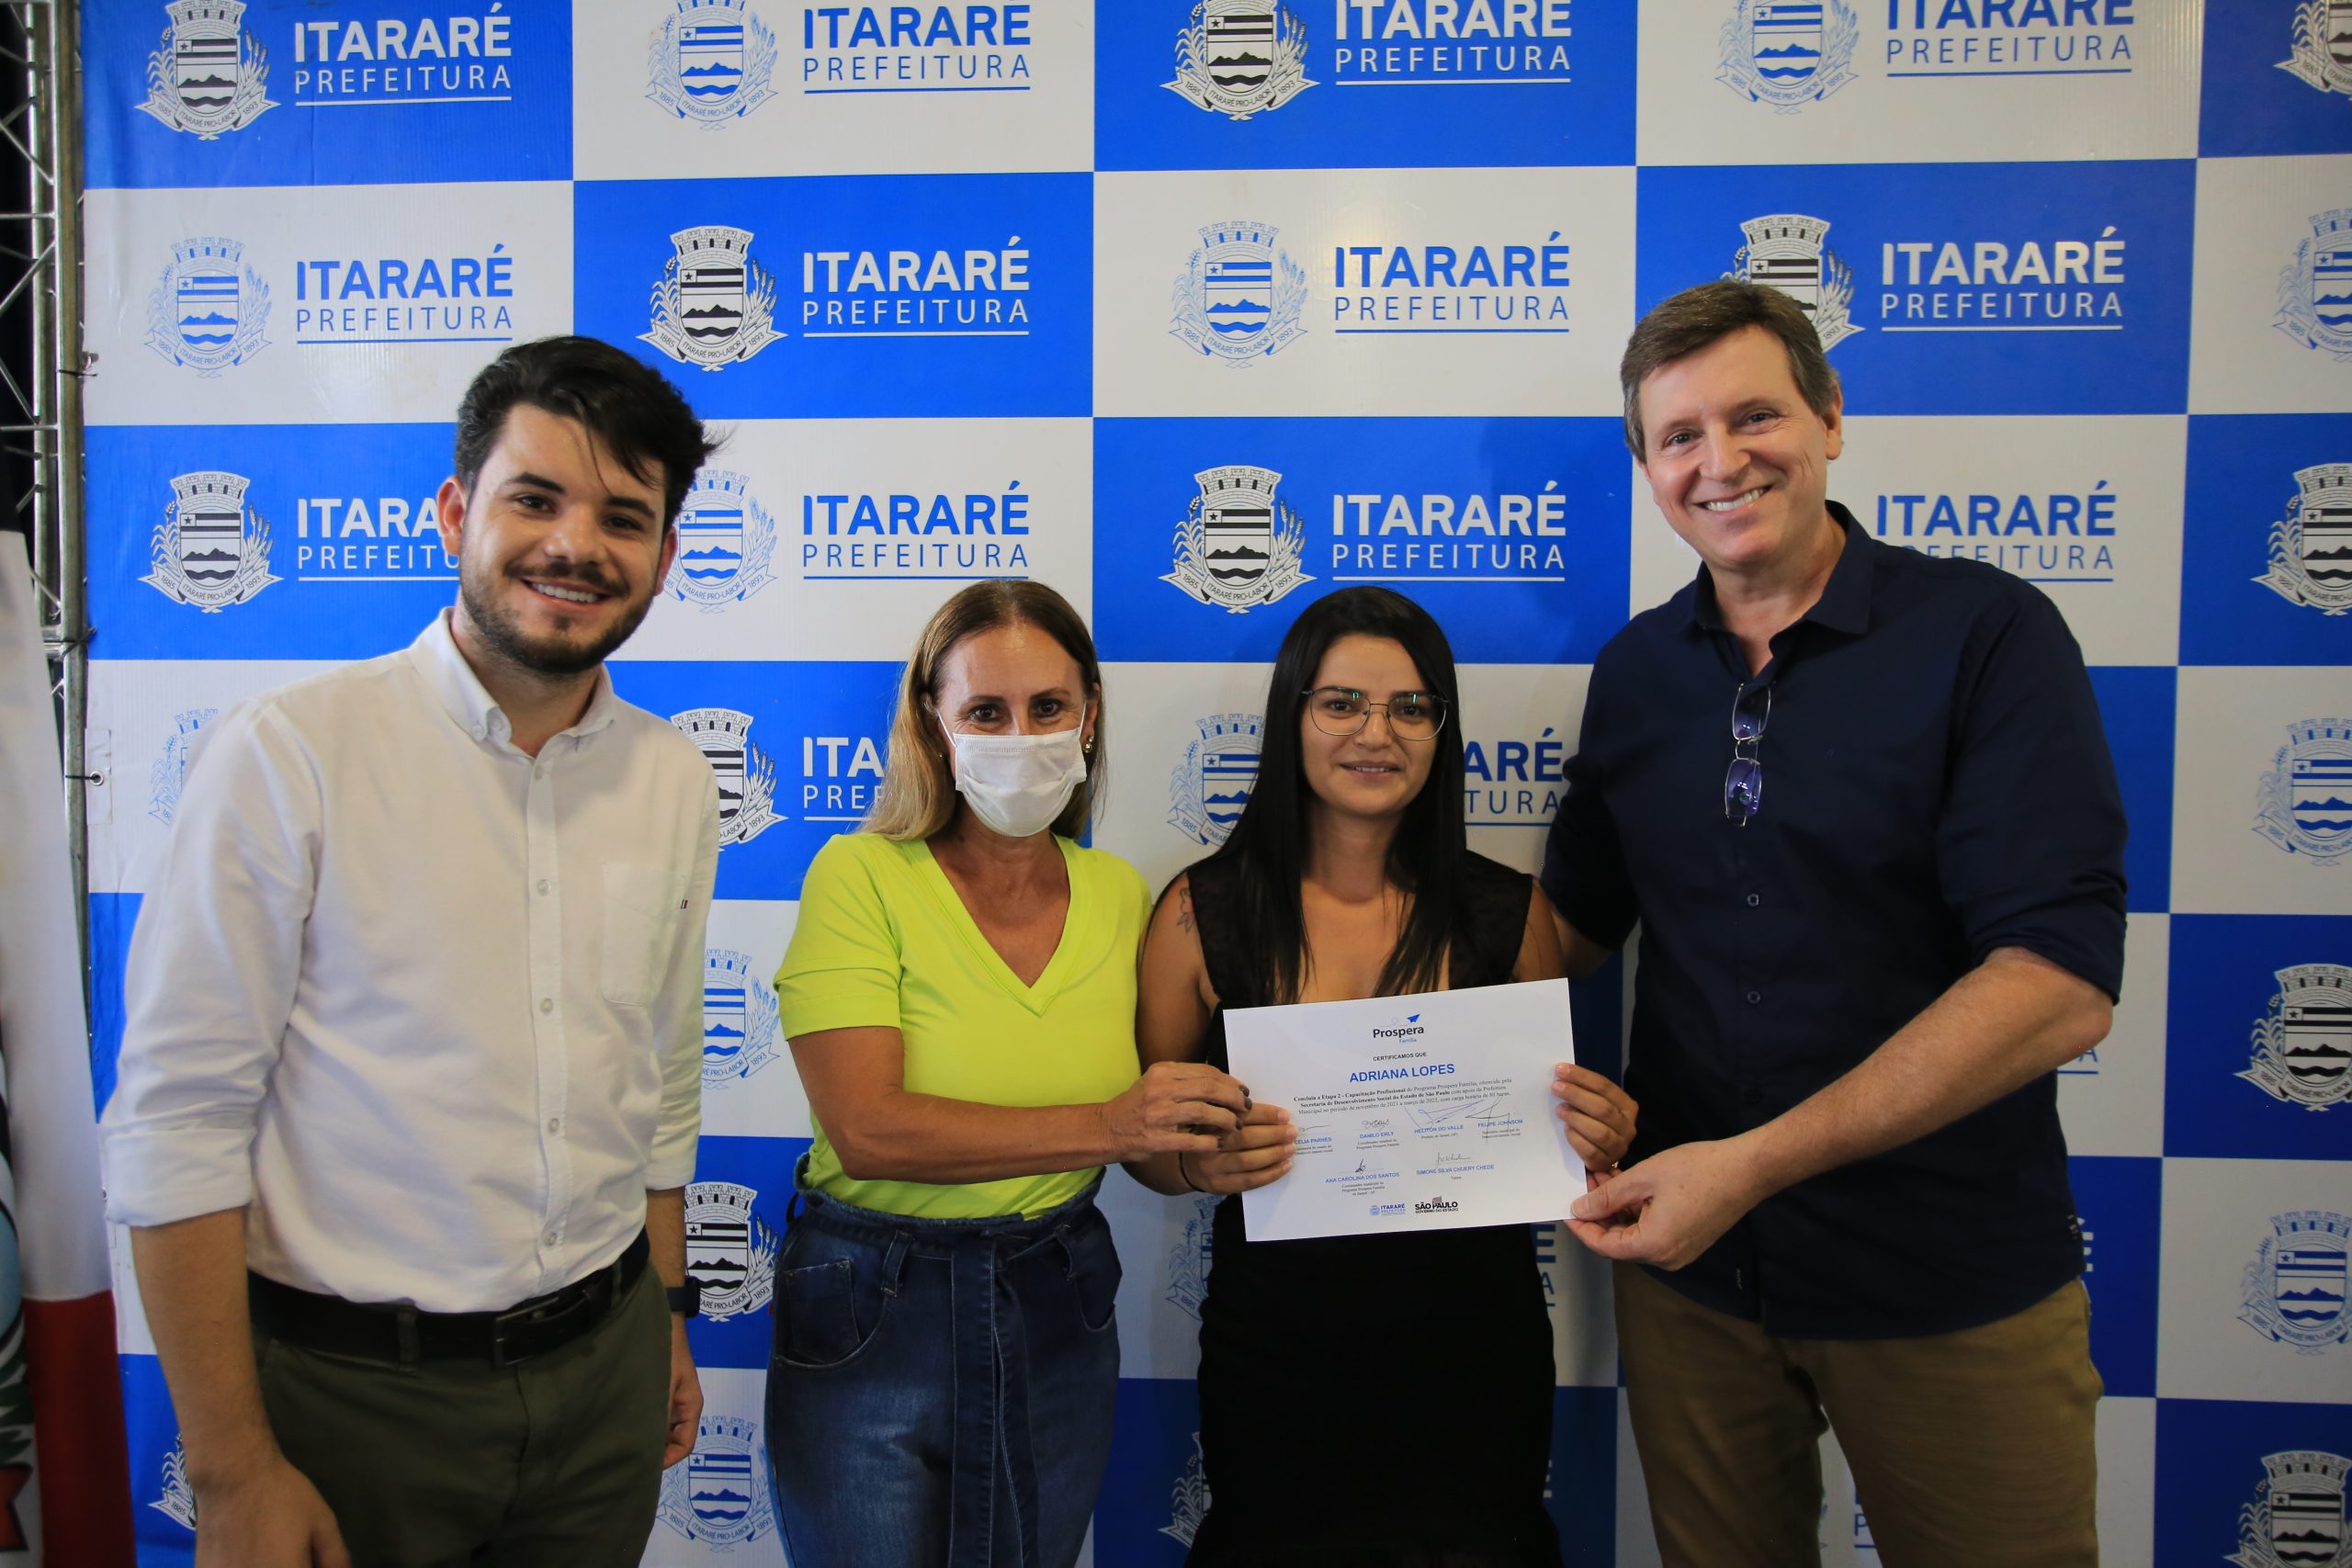 Prefeitura de Itararé (SP) realiza formatura da 2ª etapa do Programa Prospera Família